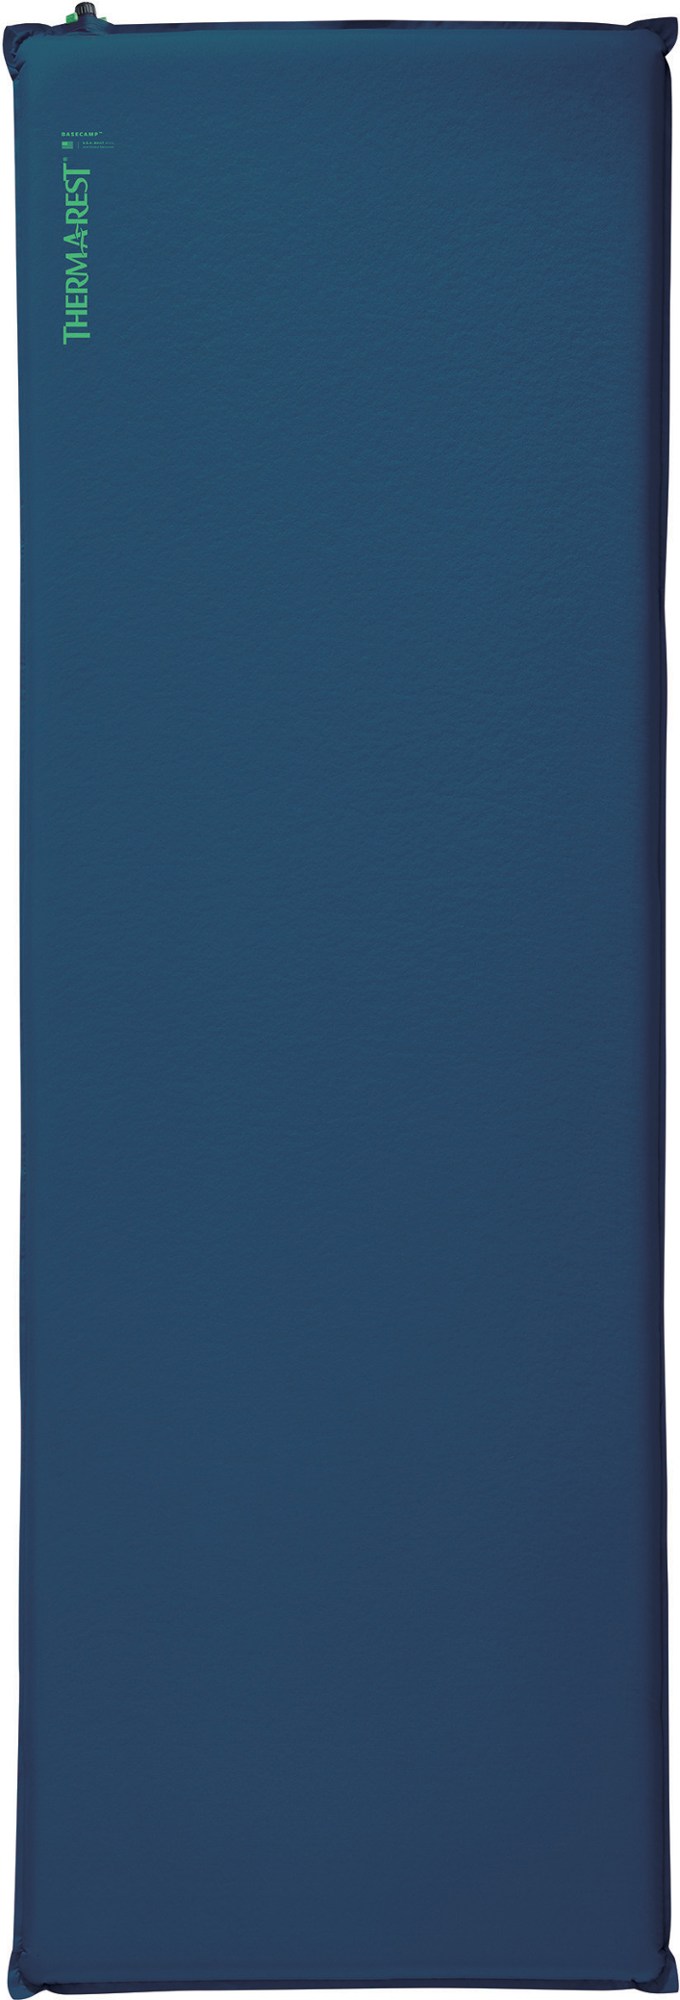 Спальный коврик BaseCamp Therm-a-Rest, синий спальный коврик prolite apex therm a rest цвет heat wave